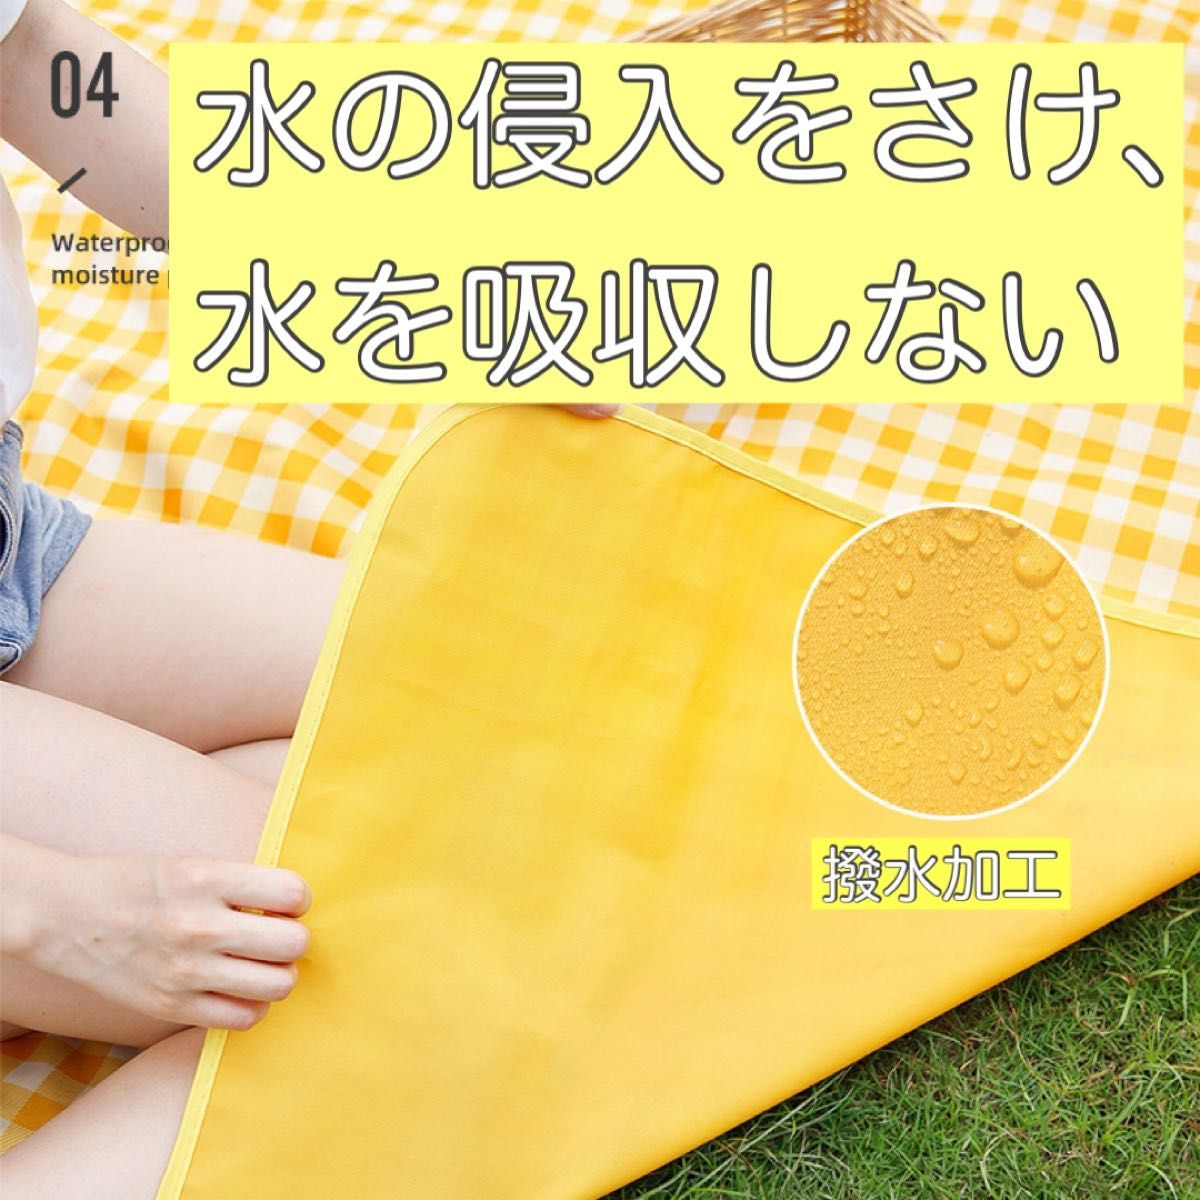 200cm×200cm 特大 レジャーシートピクニックマット 【イエロー】